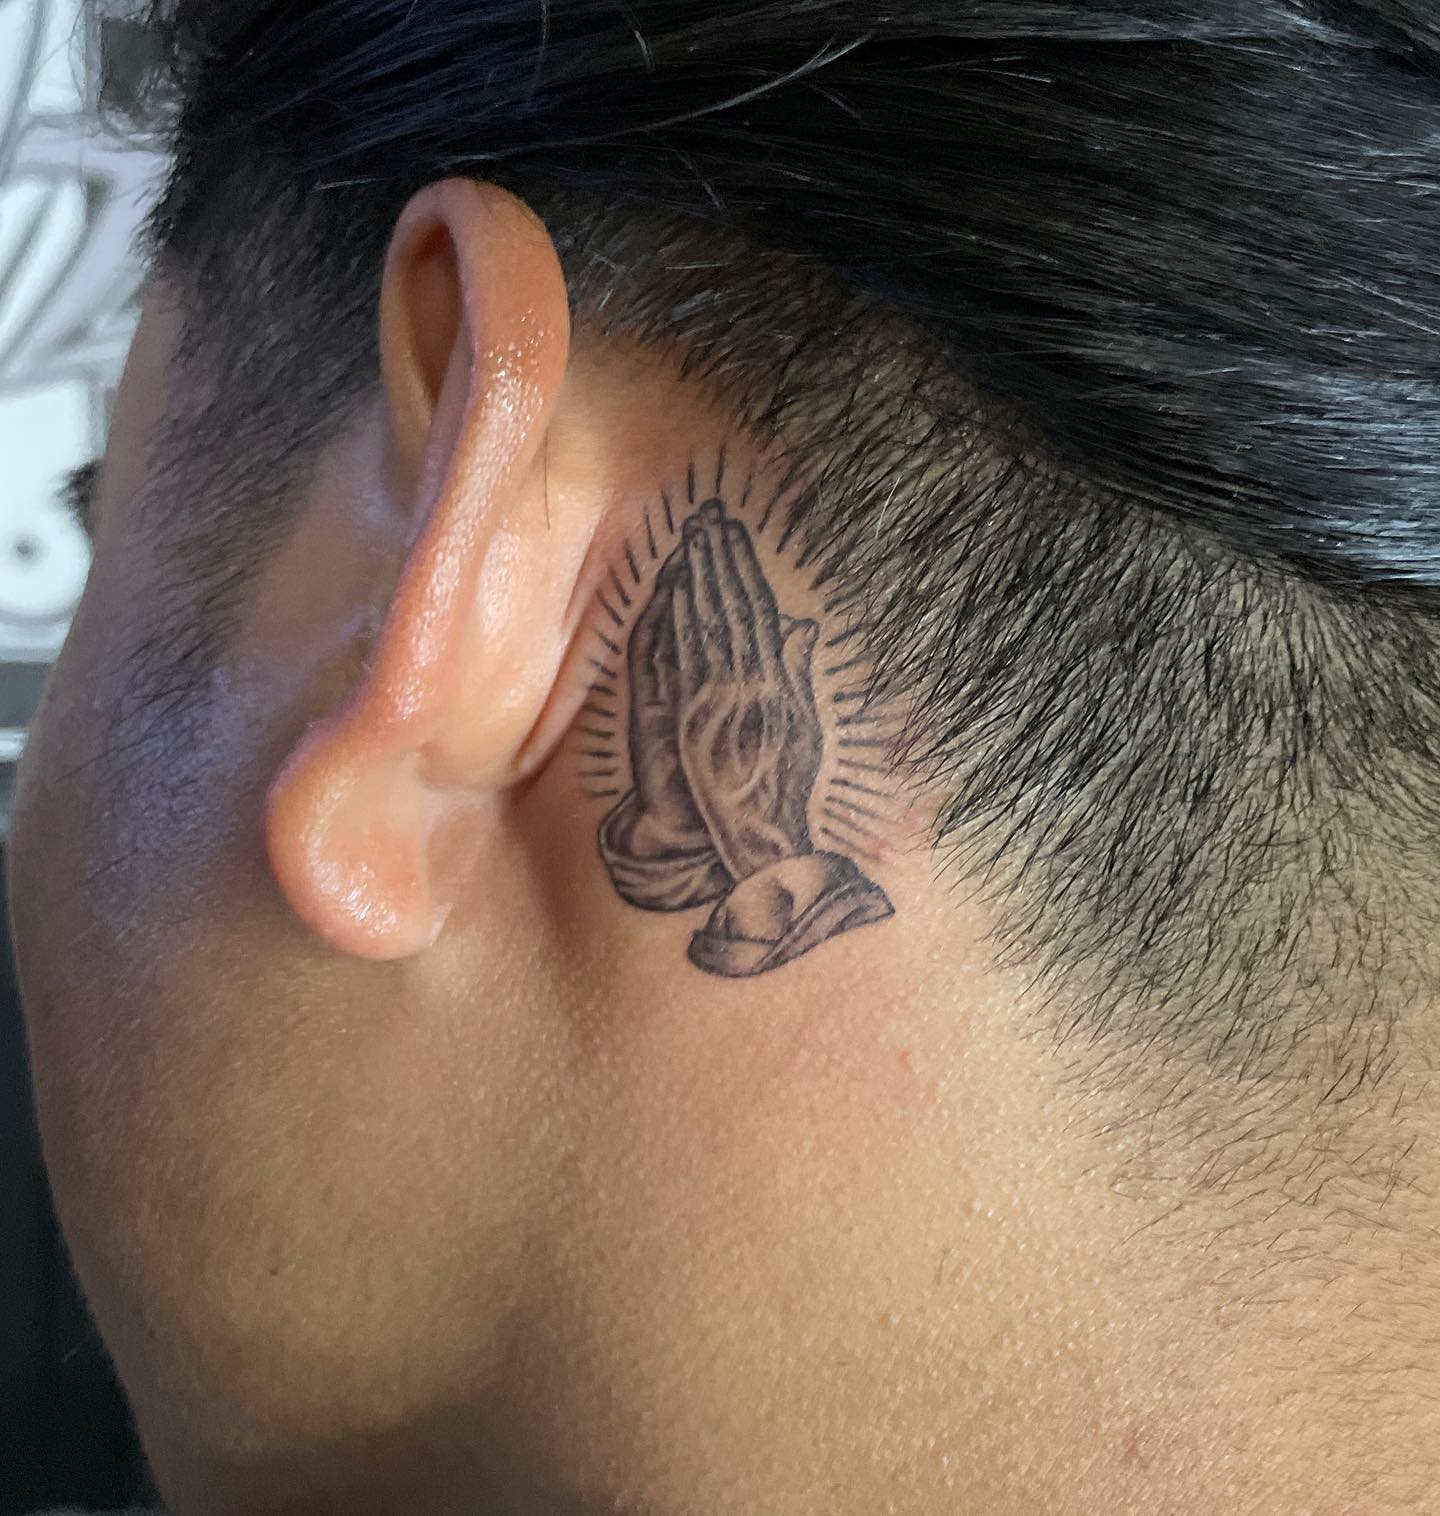 Tatuaje de manos rezando detrás de la oreja.